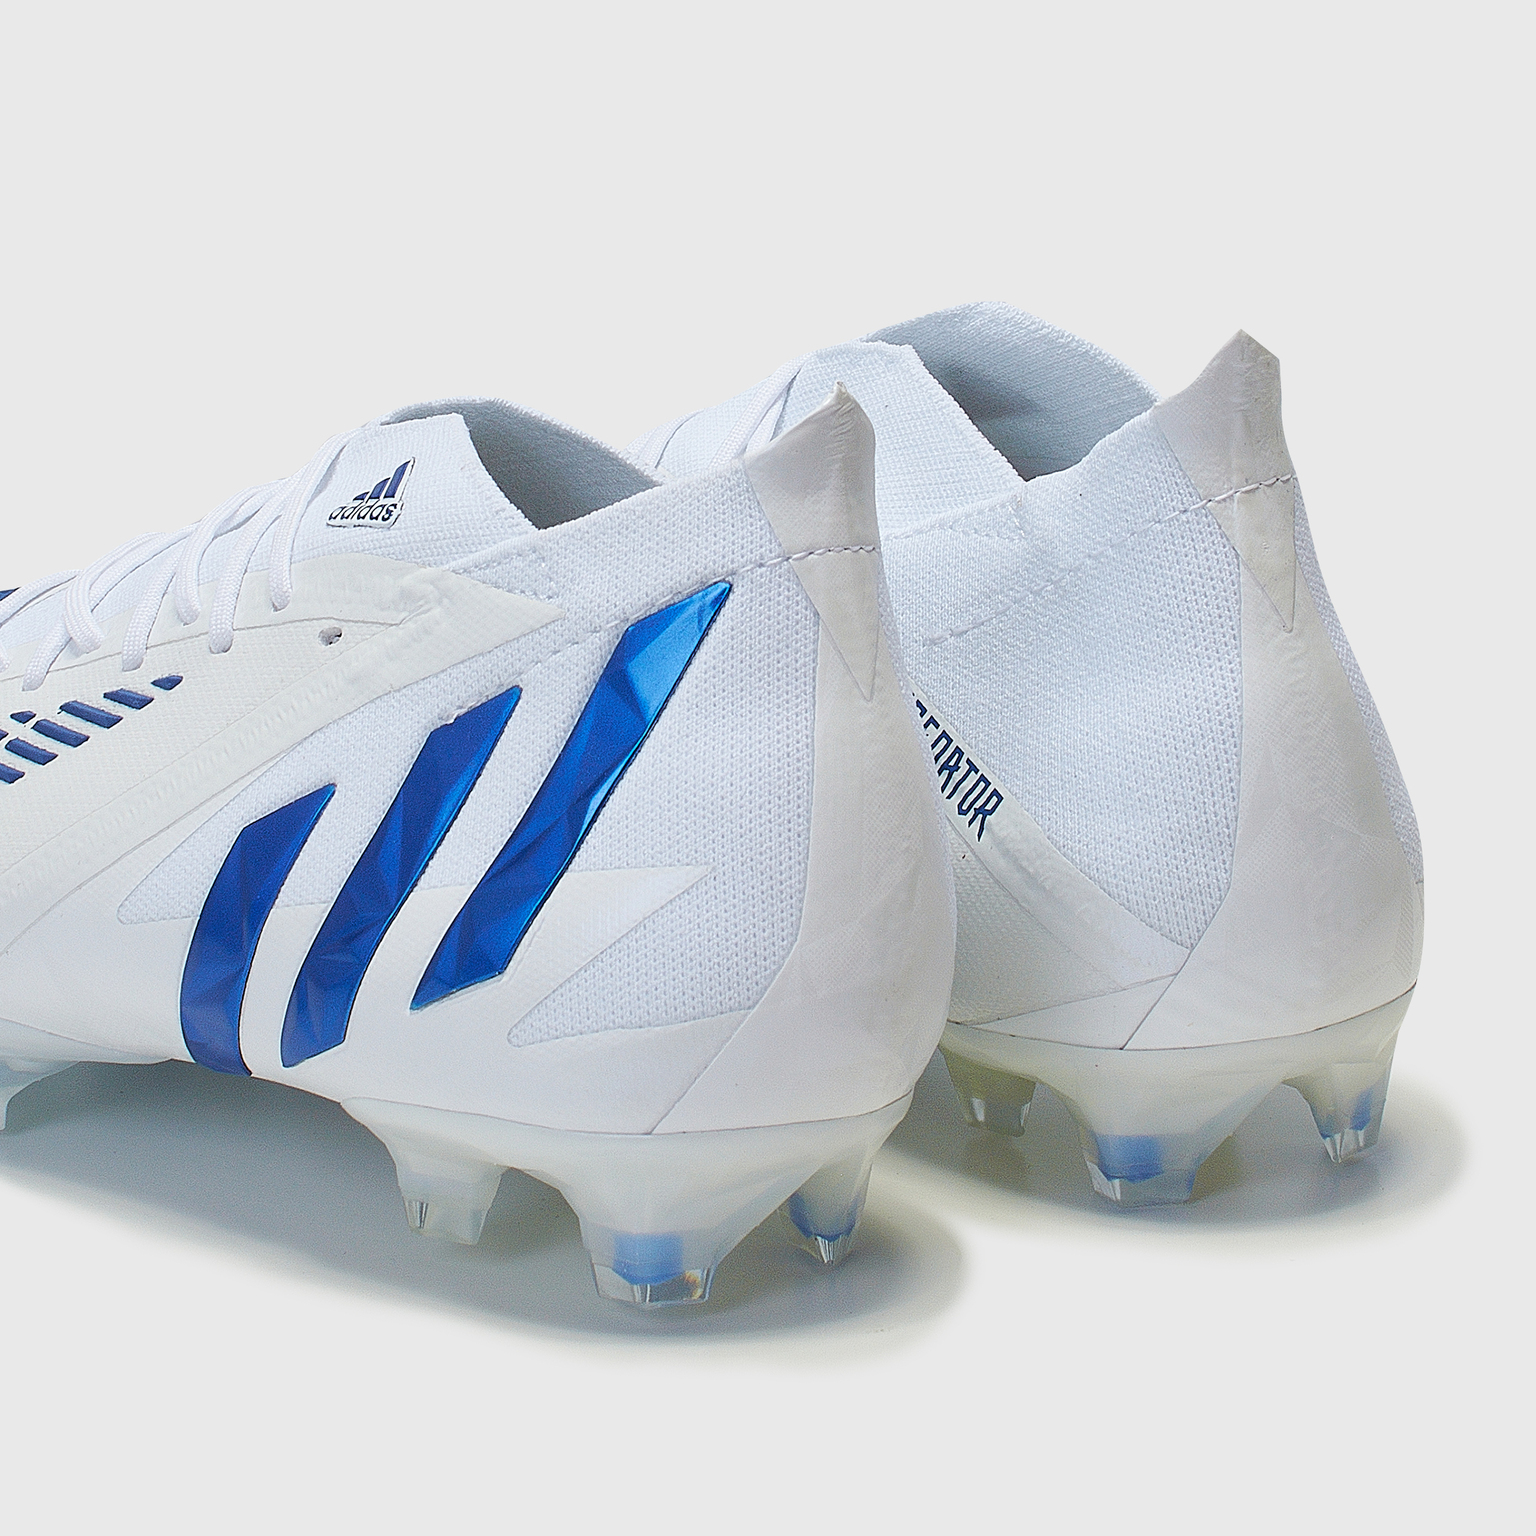 Бутсы Adidas Predator Edge.1 FG H02931 – купить бутсы в интернет магазине  Footballstore, цена, фото, отзывы